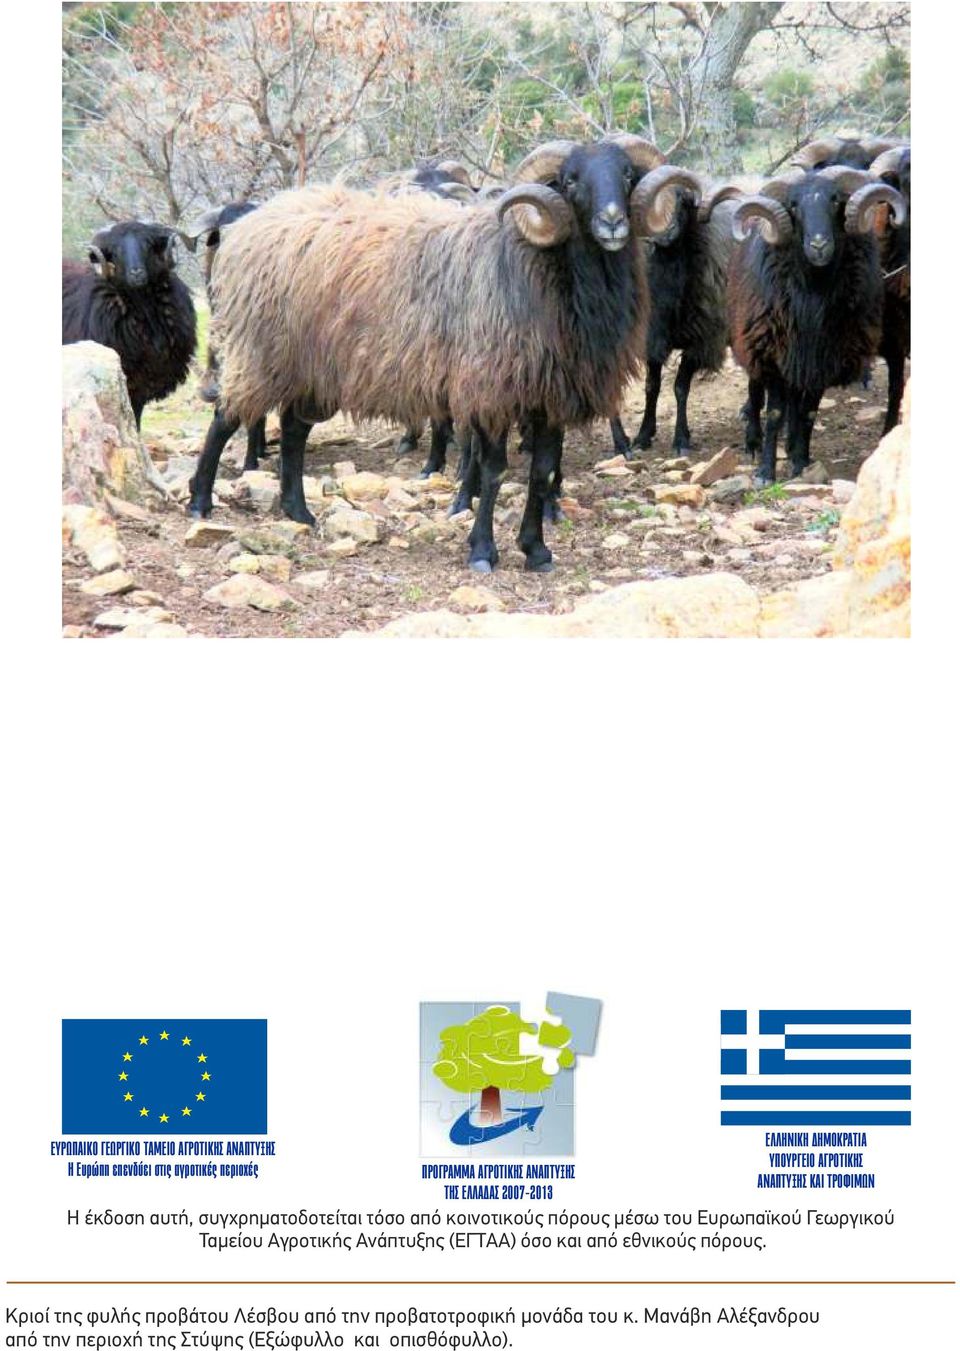 κοινοτικούς πόρους µέσω του Ευρωπαϊκού Γεωργικού Ταµείου Αγροτικής Ανάπτυξης (ΕΓΤΑΑ) όσο και από εθνικούς πόρους.